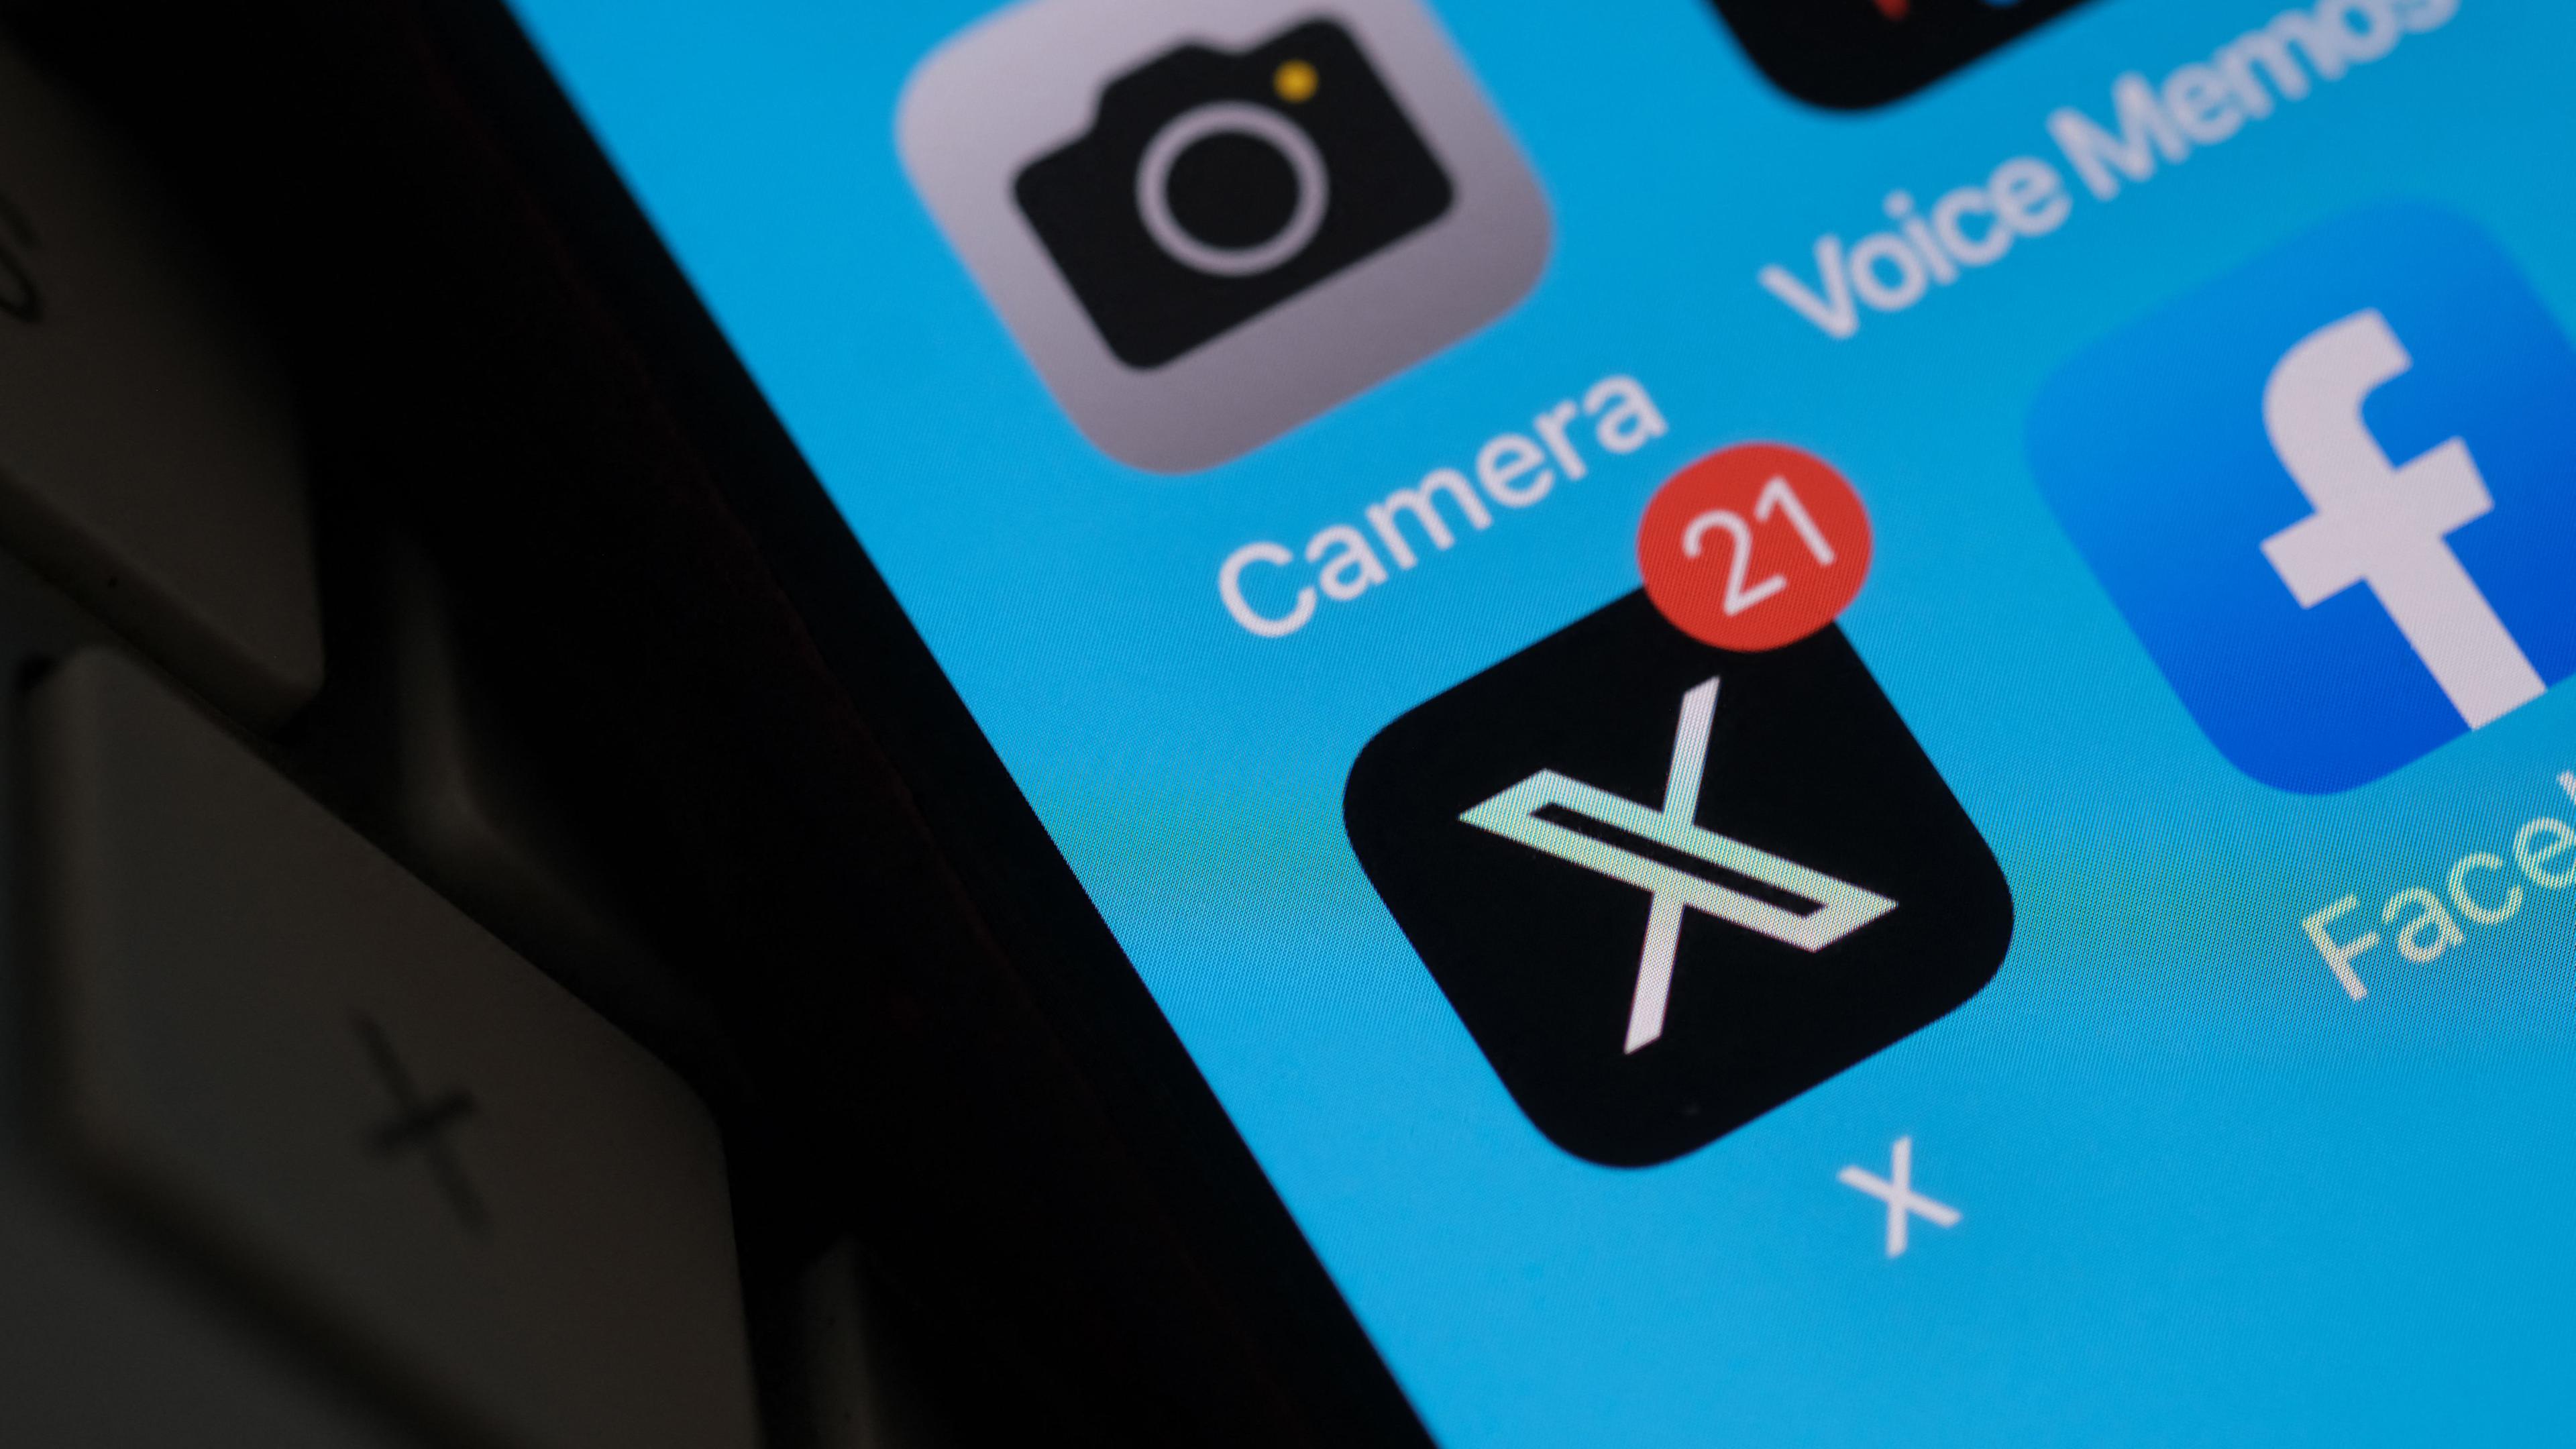 Diese Abbildung zeigt das X-Logo (ehemals Twitter) auf einem Smartphone-Bildschirm